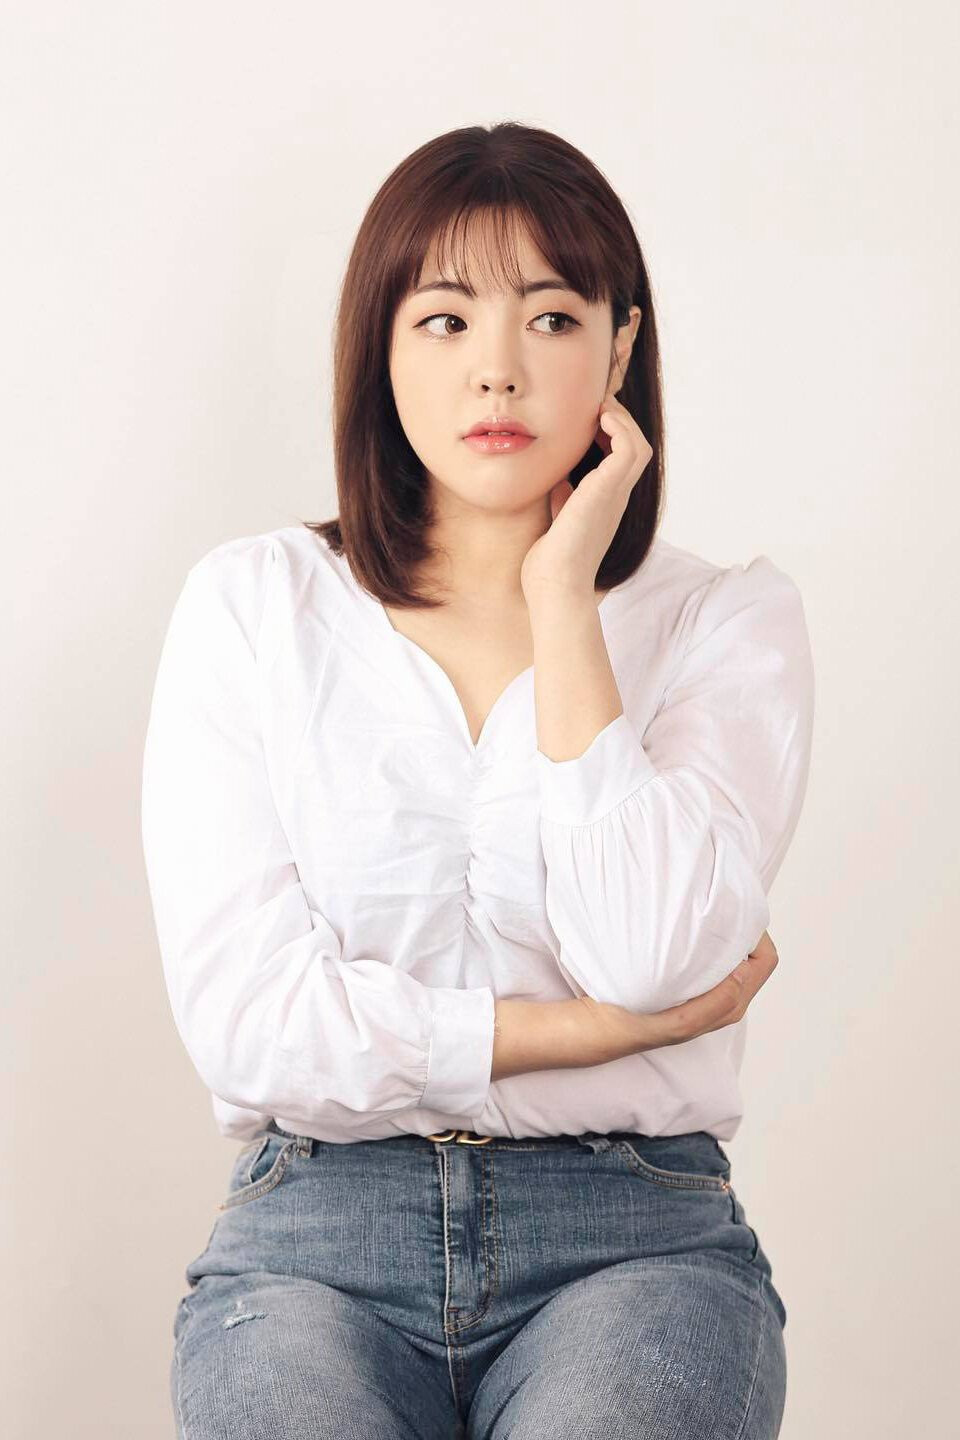 Từ mukbanger nổi tiếng với các clip ăn thùng uống vại, Yang Soo Bin trở thành hình mẫu về sự kiên trì, nỗ lực và tinh thần lạc quan sau hành trình giảm cân. (Ảnh: IGNV)